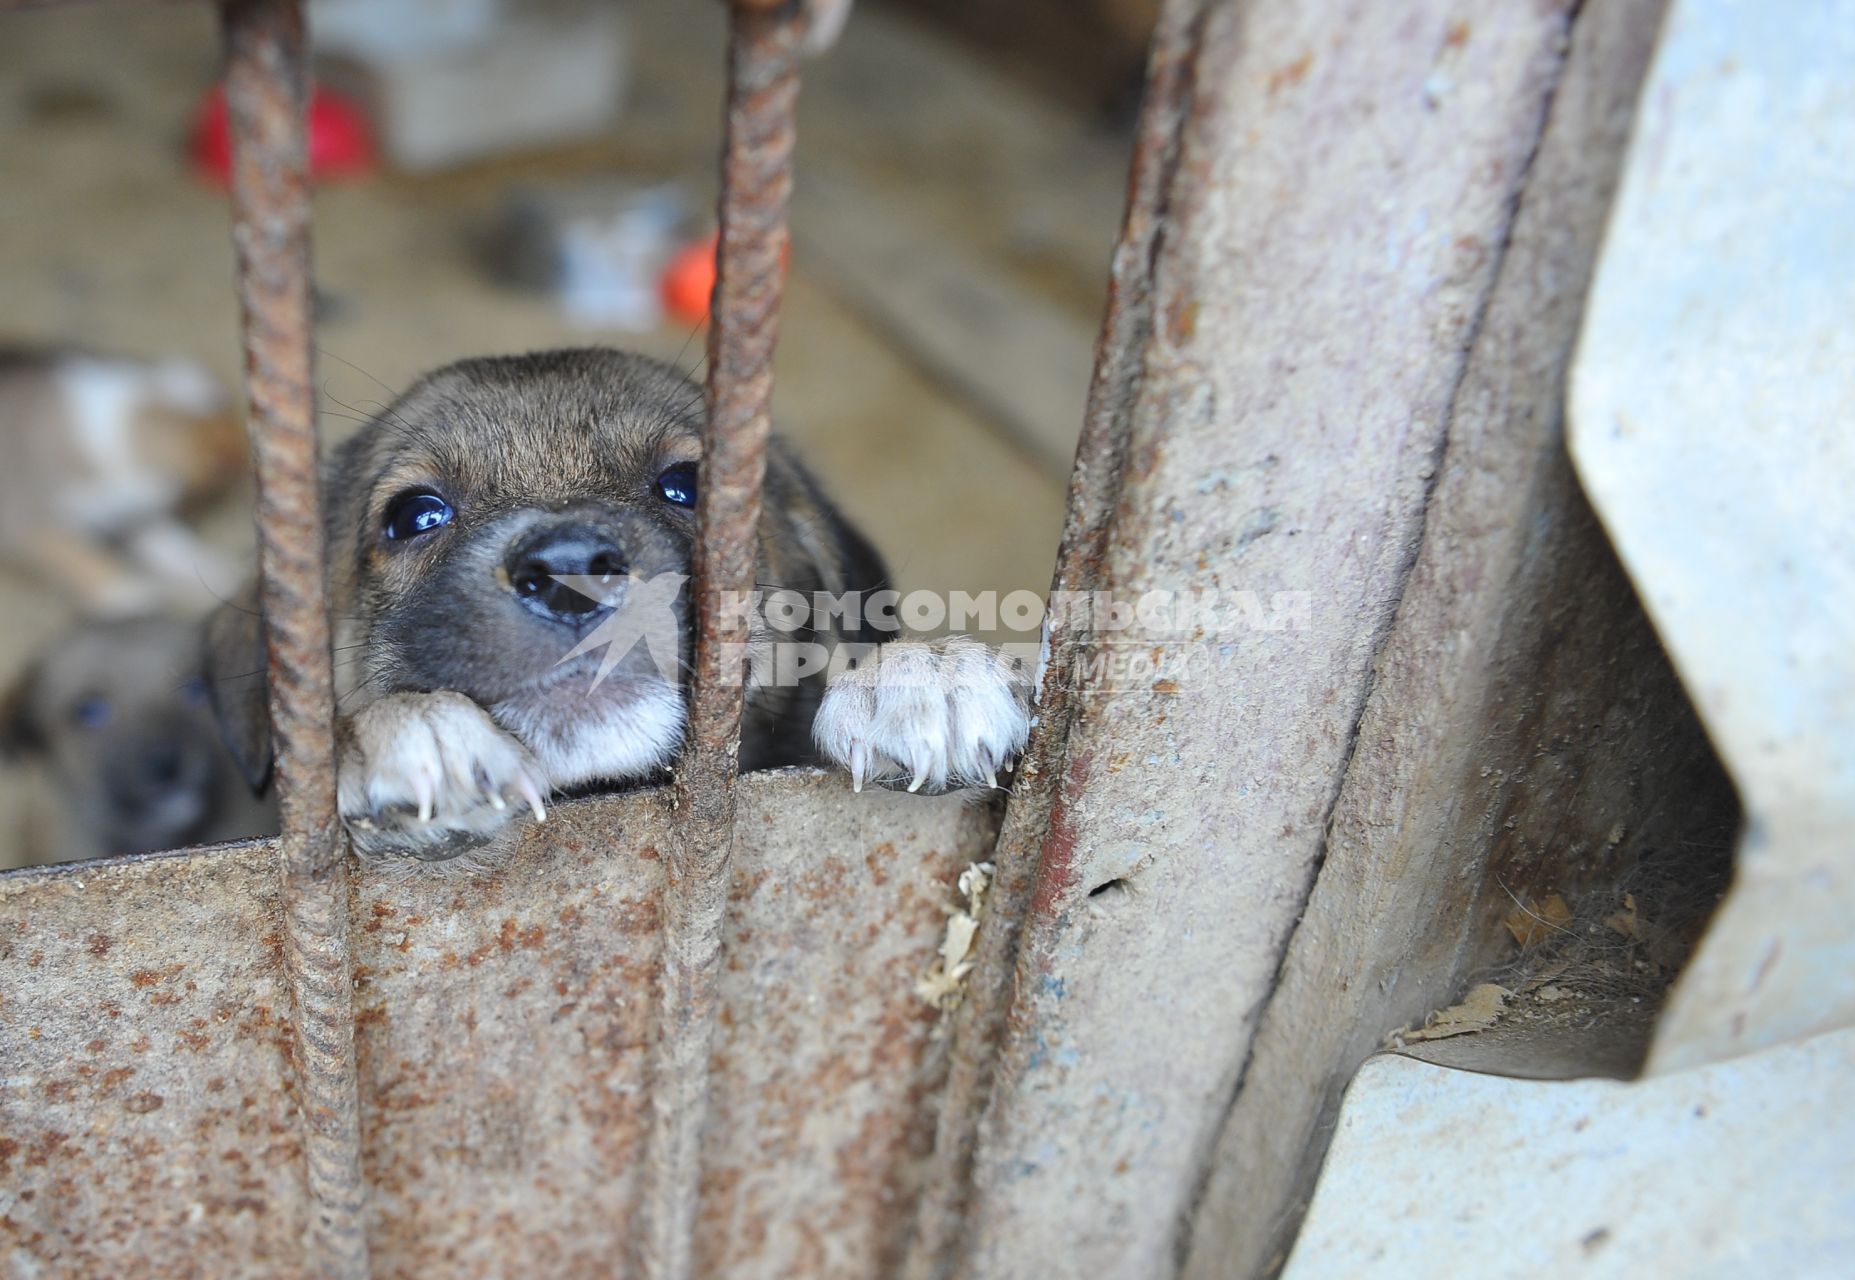 Питомник для бездомных собак и кошек в городе Пушкино. На снимке: бездомный щенок в вольере.